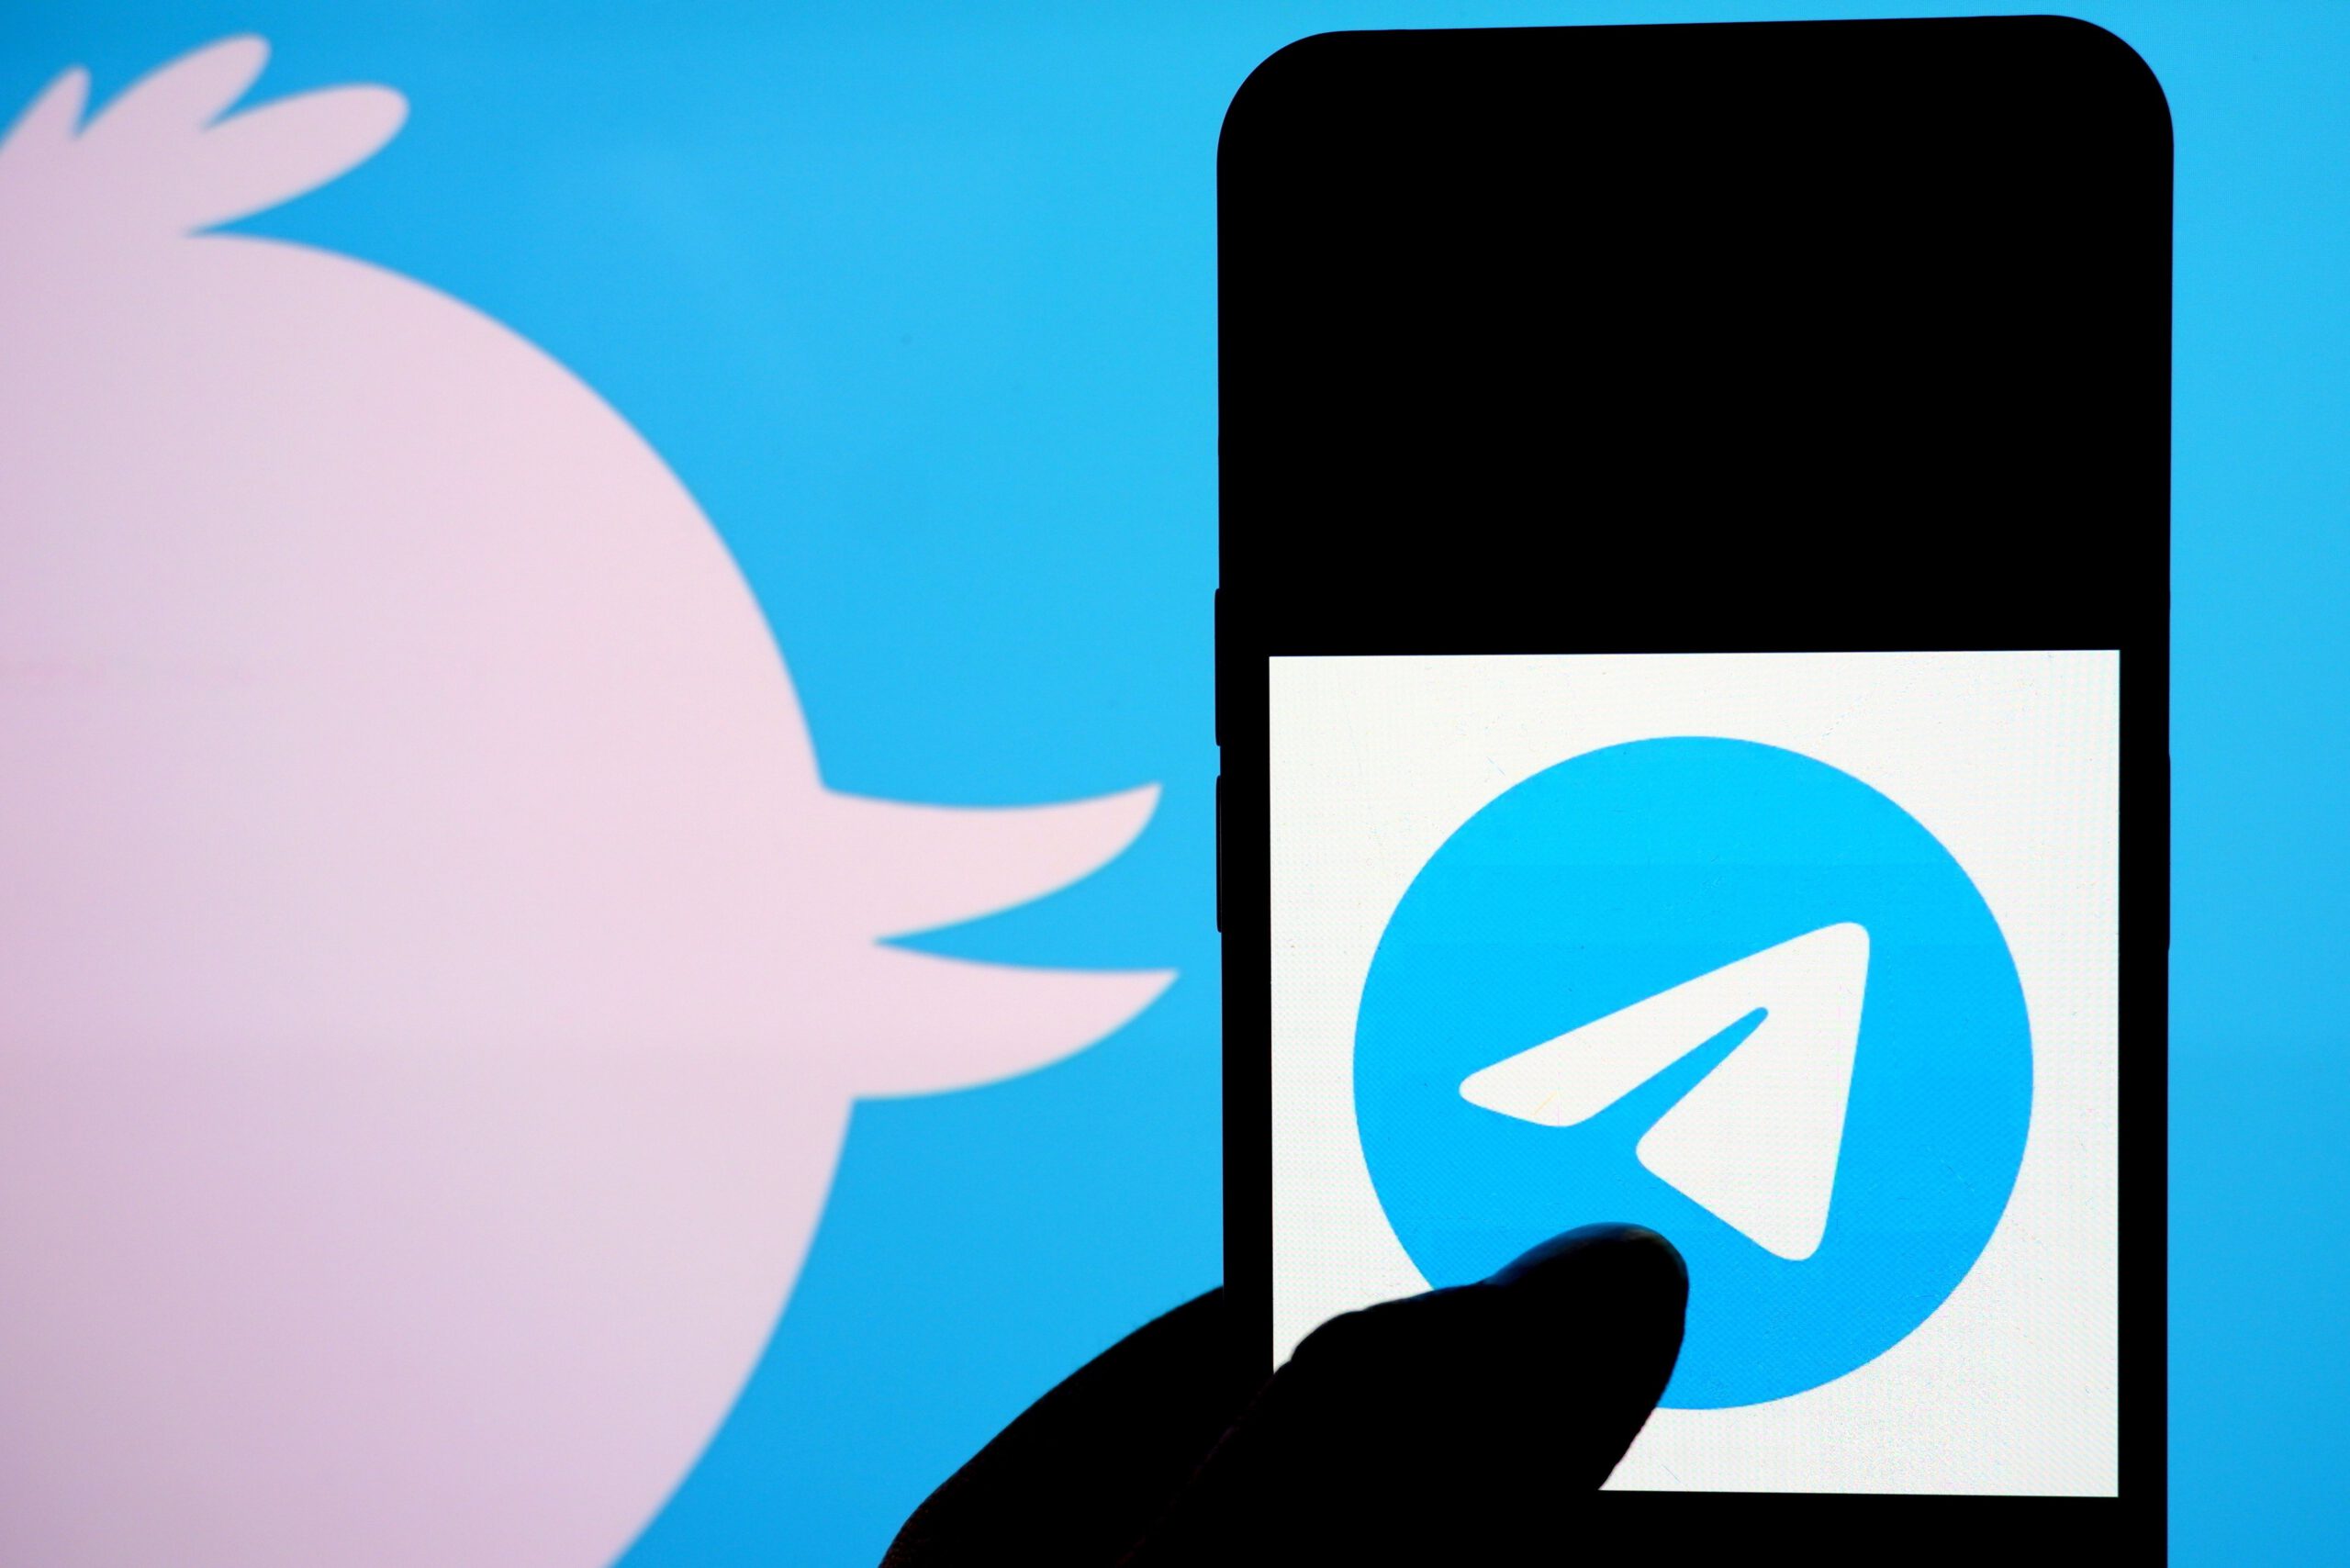 Telegram and Twitter